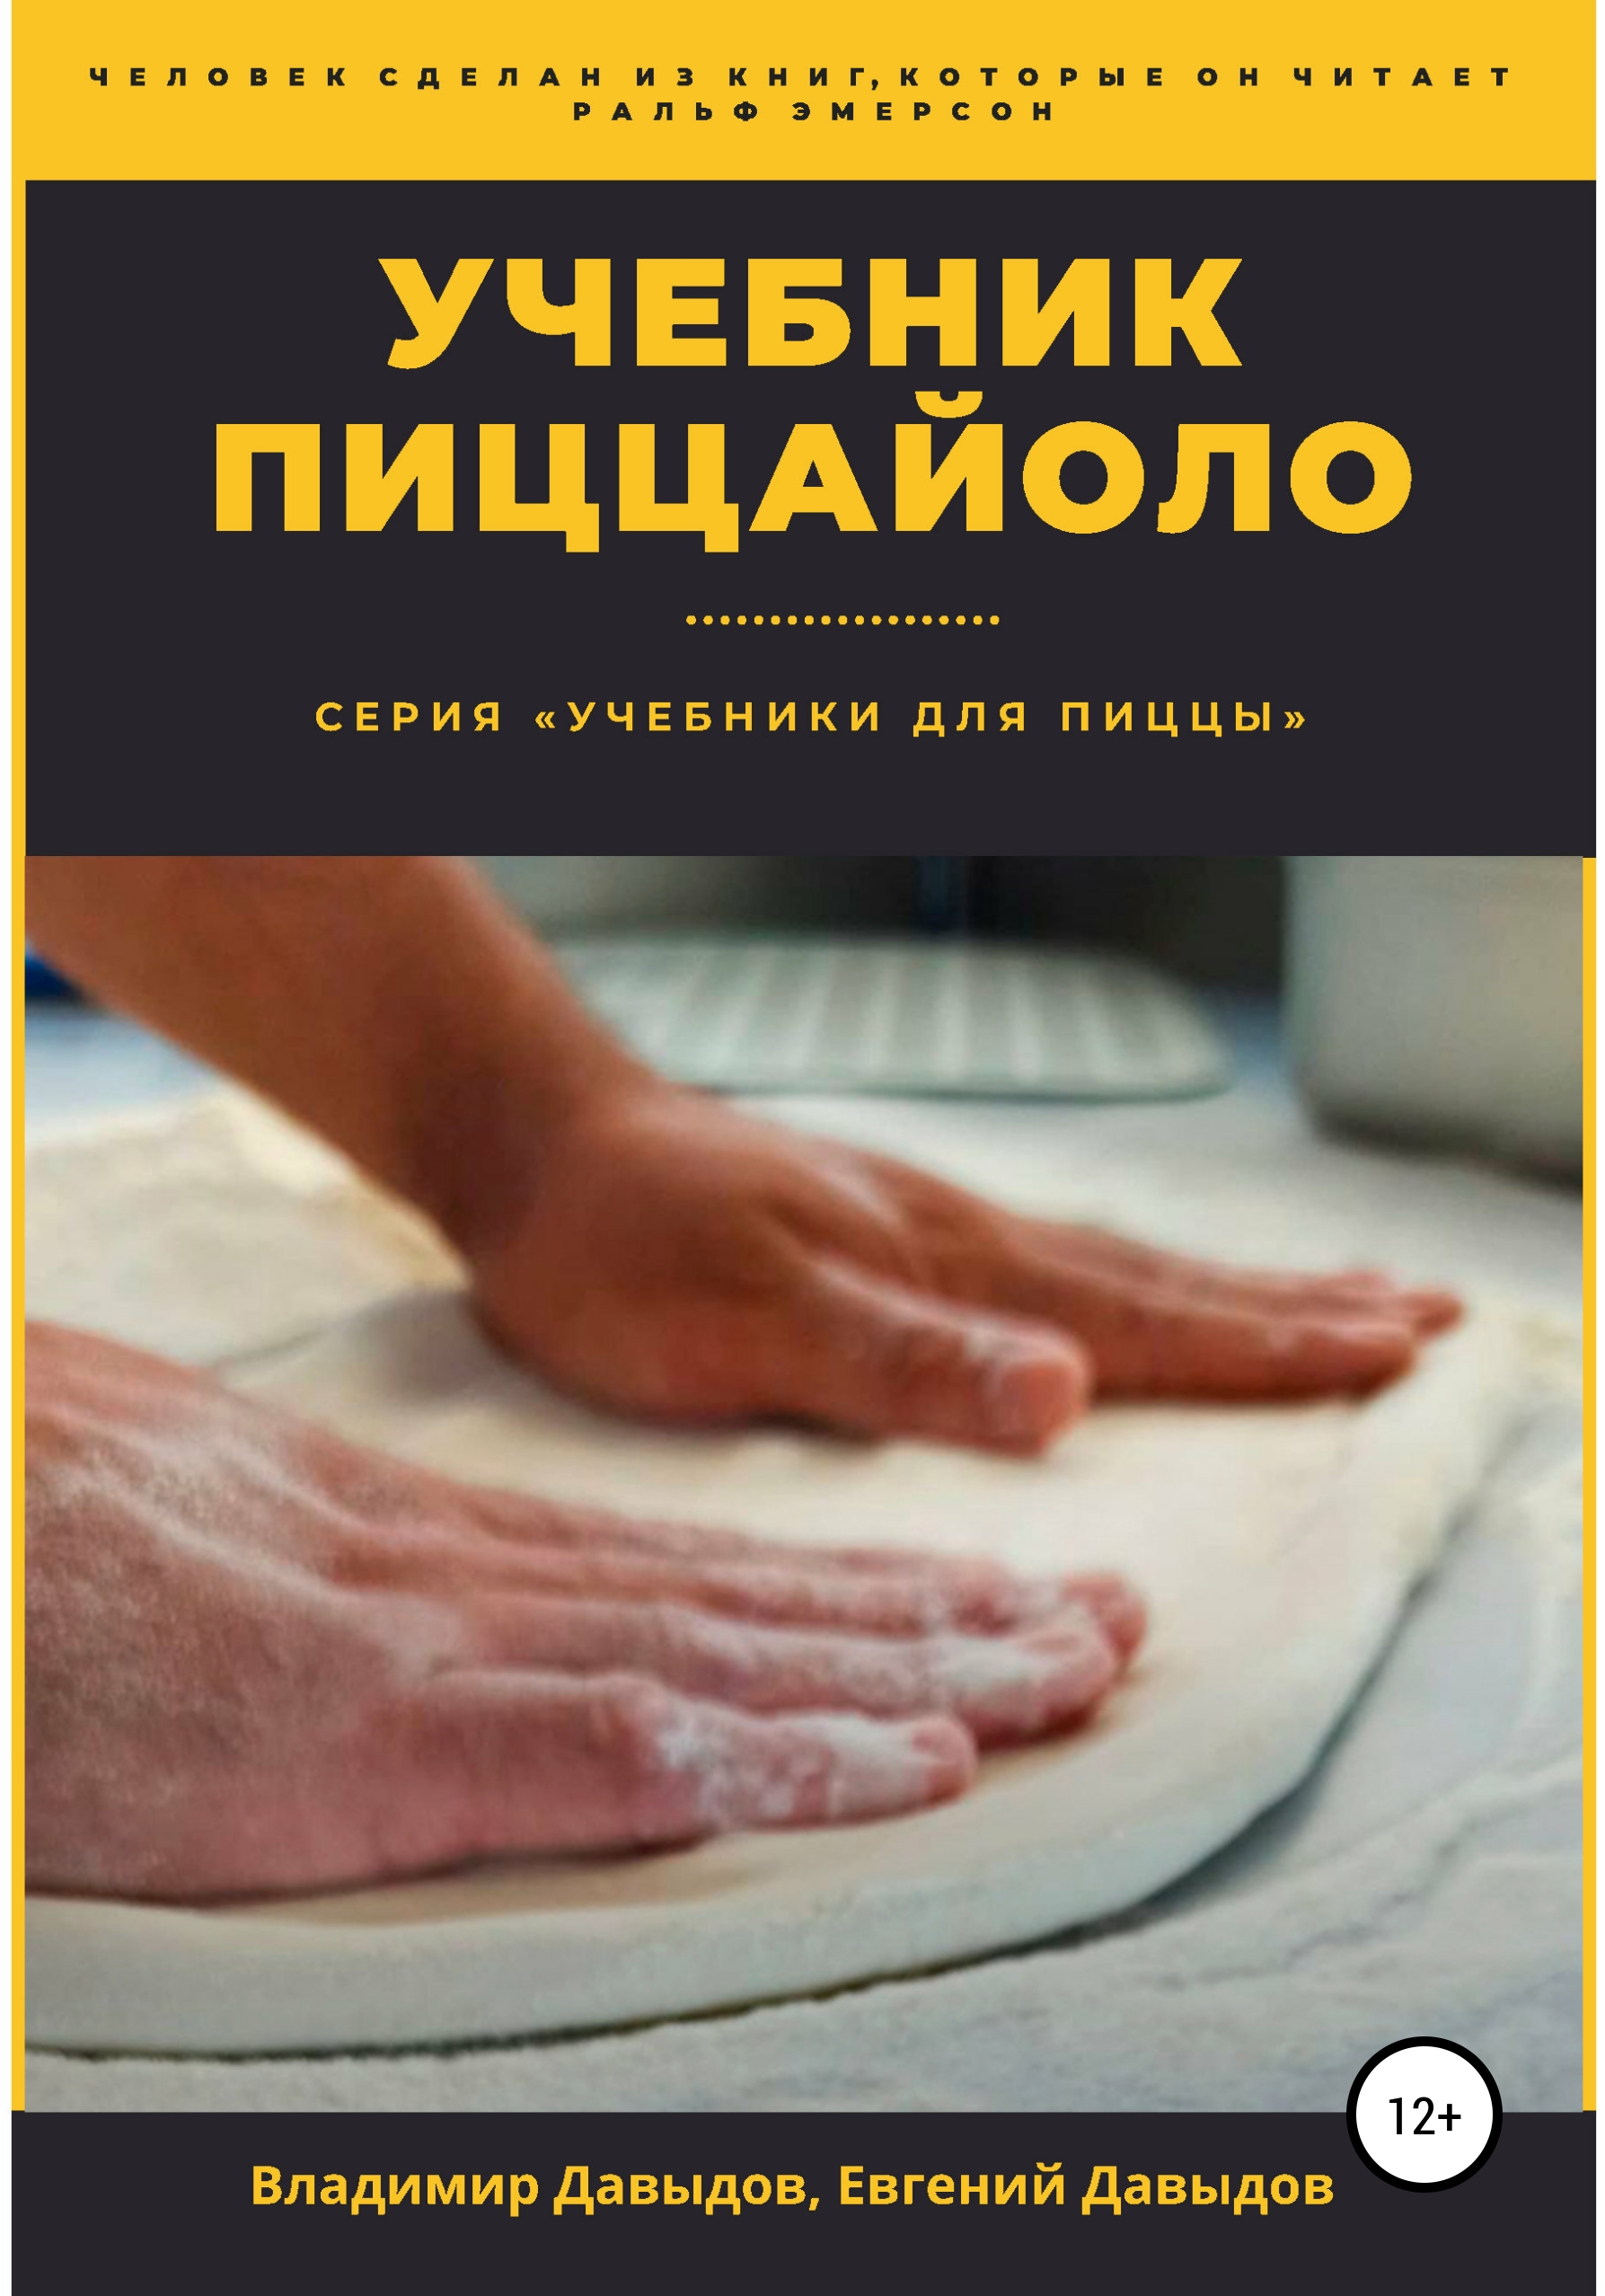 Книга  Учебник пиццайоло созданная Евгений Давыдов, Владимир Давыдов может относится к жанру малый и средний бизнес, пищевое производство. Стоимость электронной книги Учебник пиццайоло с идентификатором 63573242 составляет 399.00 руб.